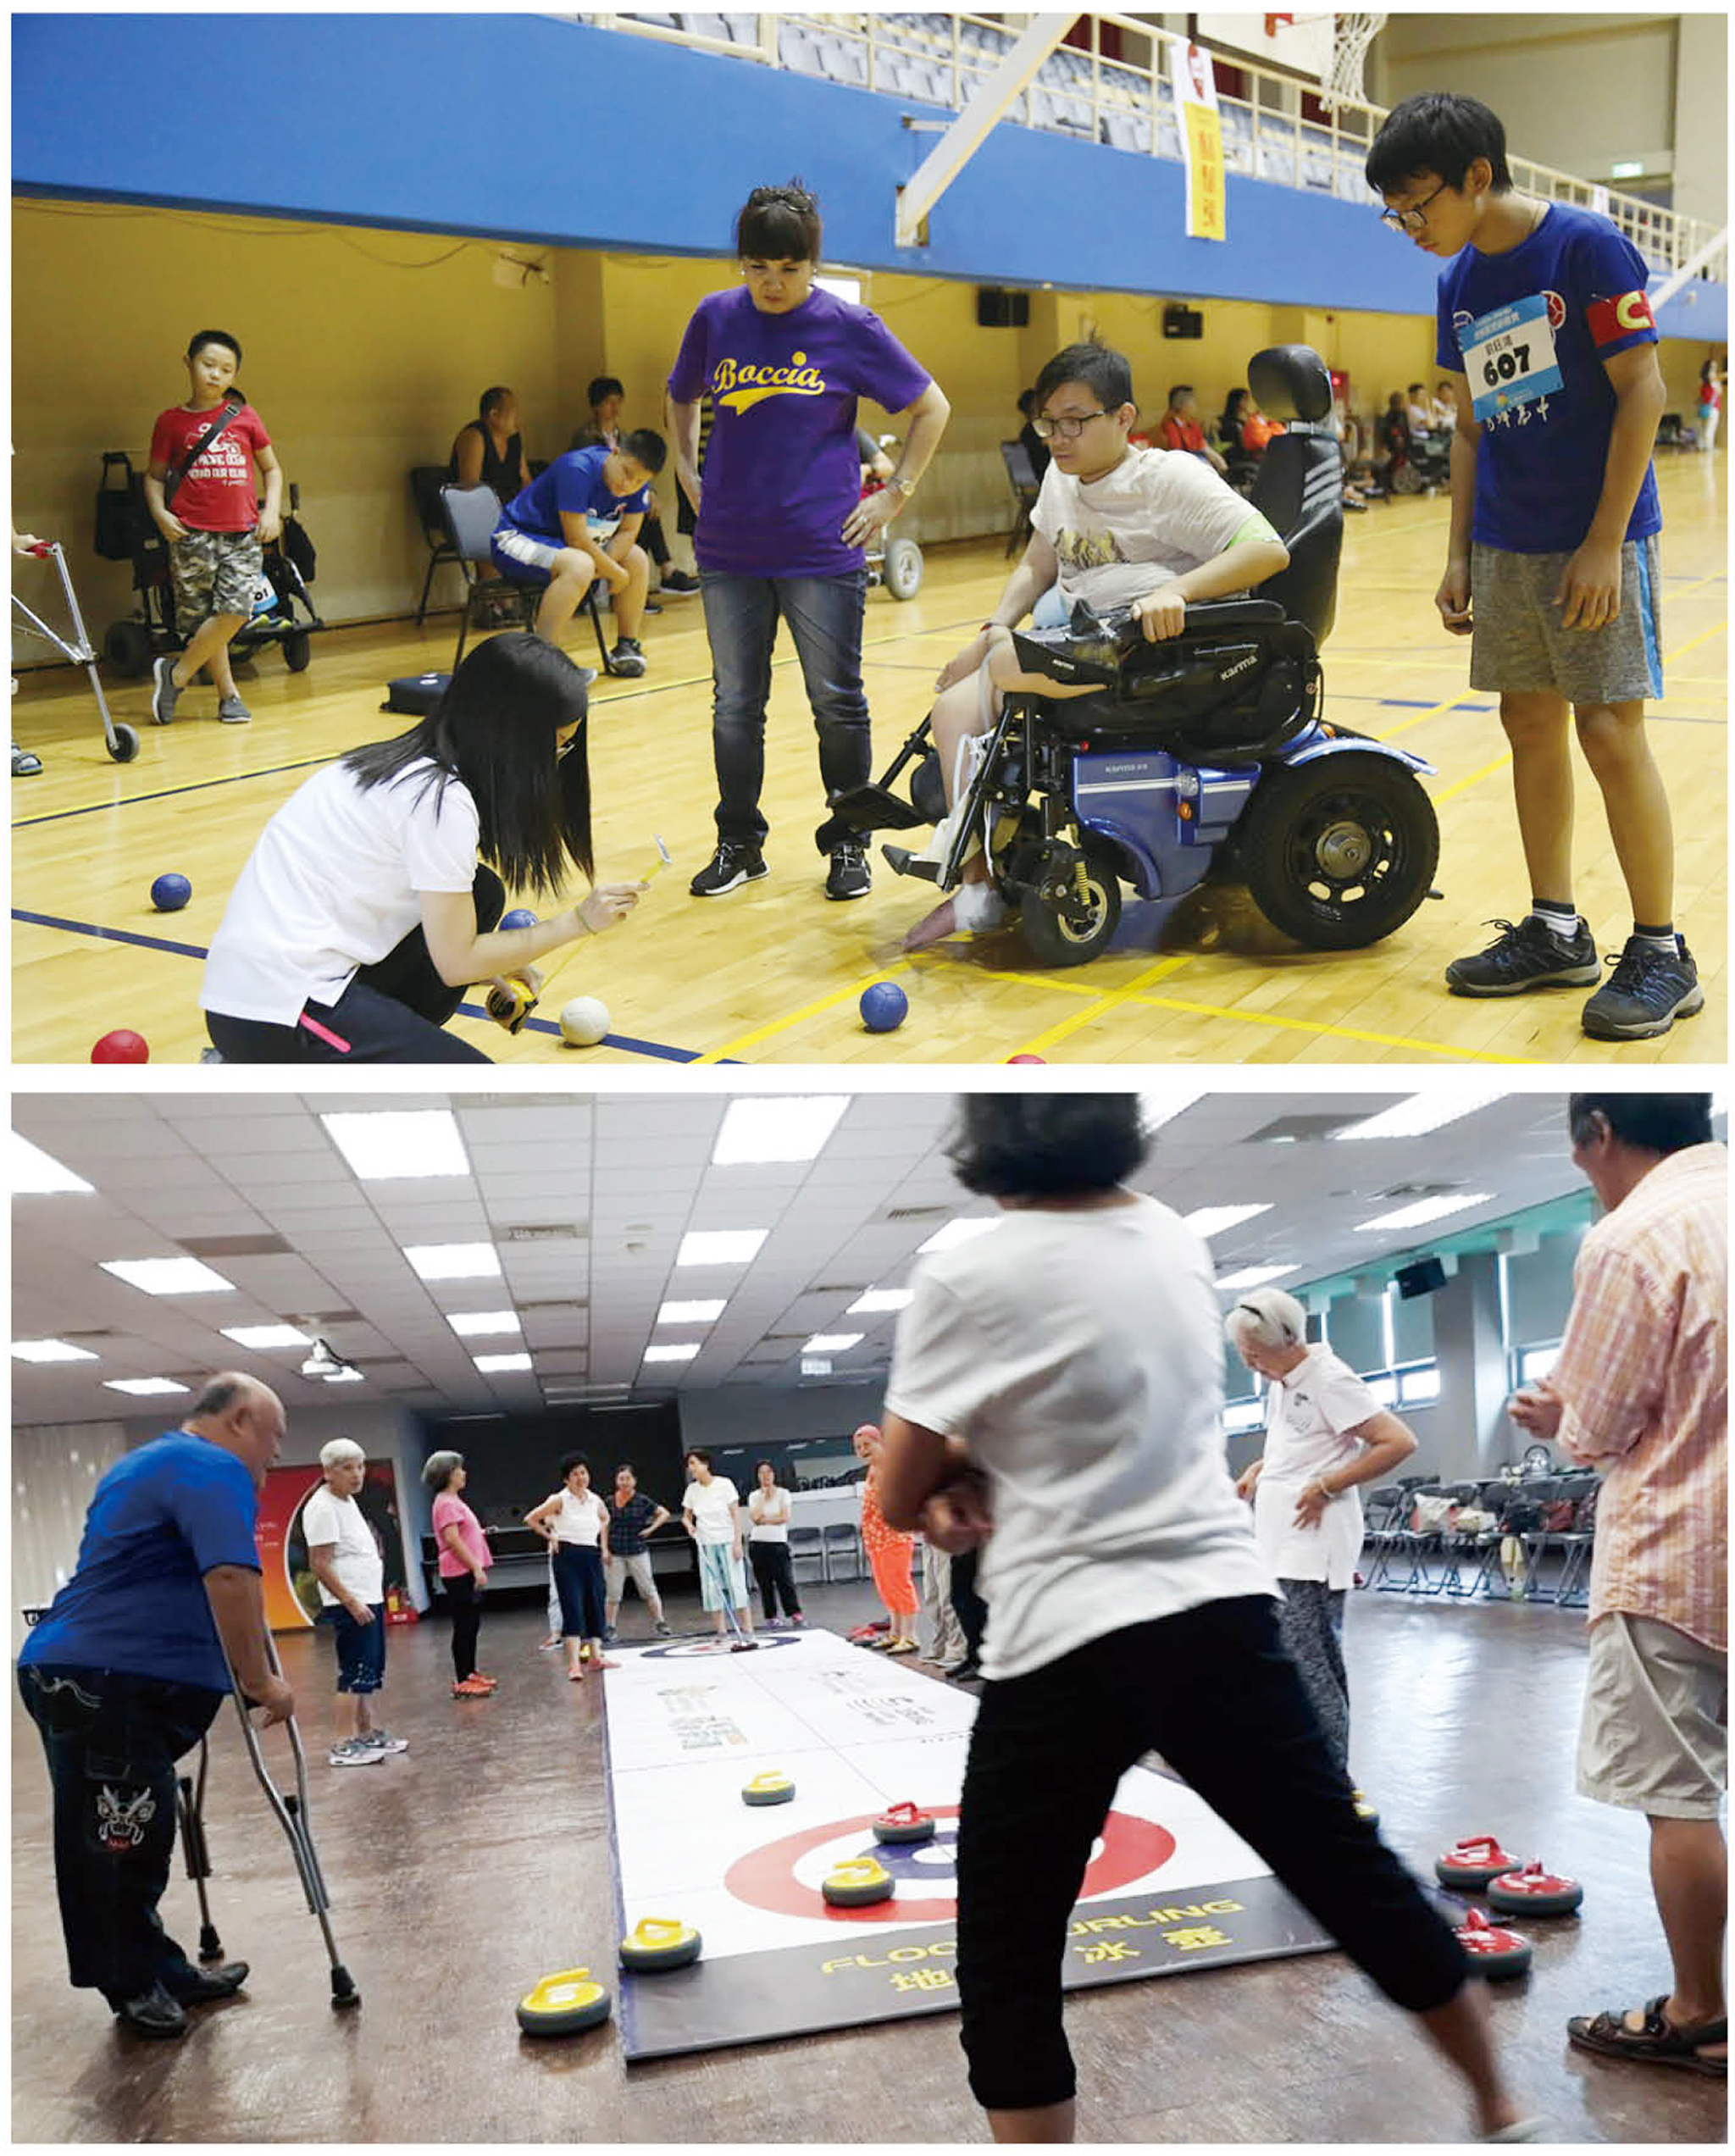 上圖：地板滾球比賽。下圖：中華民國紅十字總會長照據點跟長者們一起體驗地板冰壺。